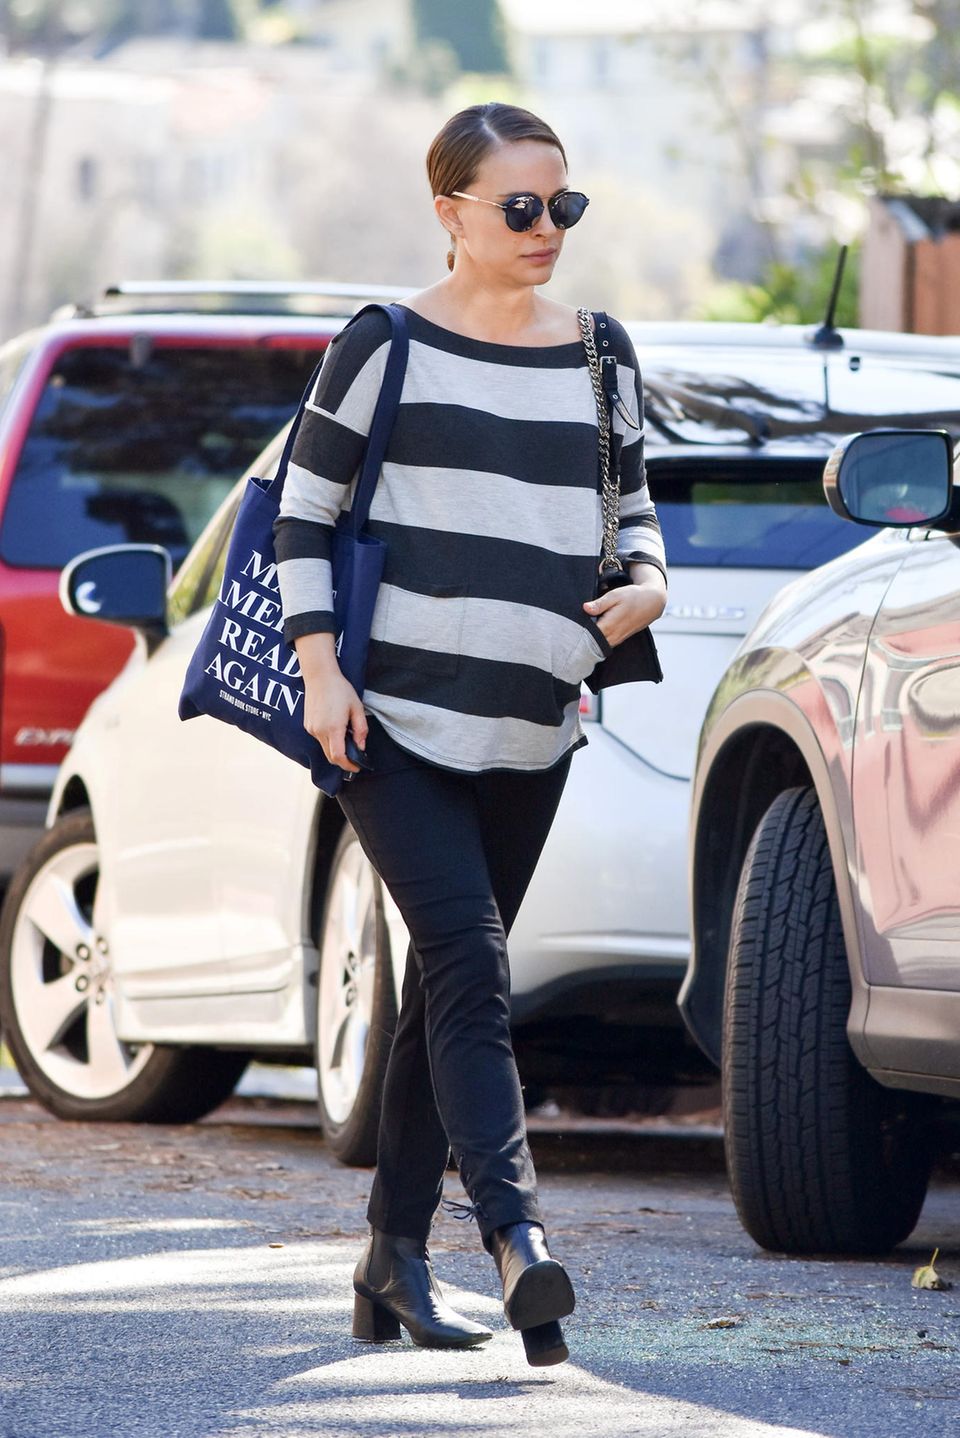 Lässig bis zur Geburt: Die hochschwangere Natalie Portman trägt zum locker fallenden, gestreiften Sweater eine schmale Hose und schwarze Stiefeletten. Dazu kombiniert sie eine Statement-Tasche mit dem Aufdruck "Make America Read Again". Ob sie wohl Bücher geshoppt hat?